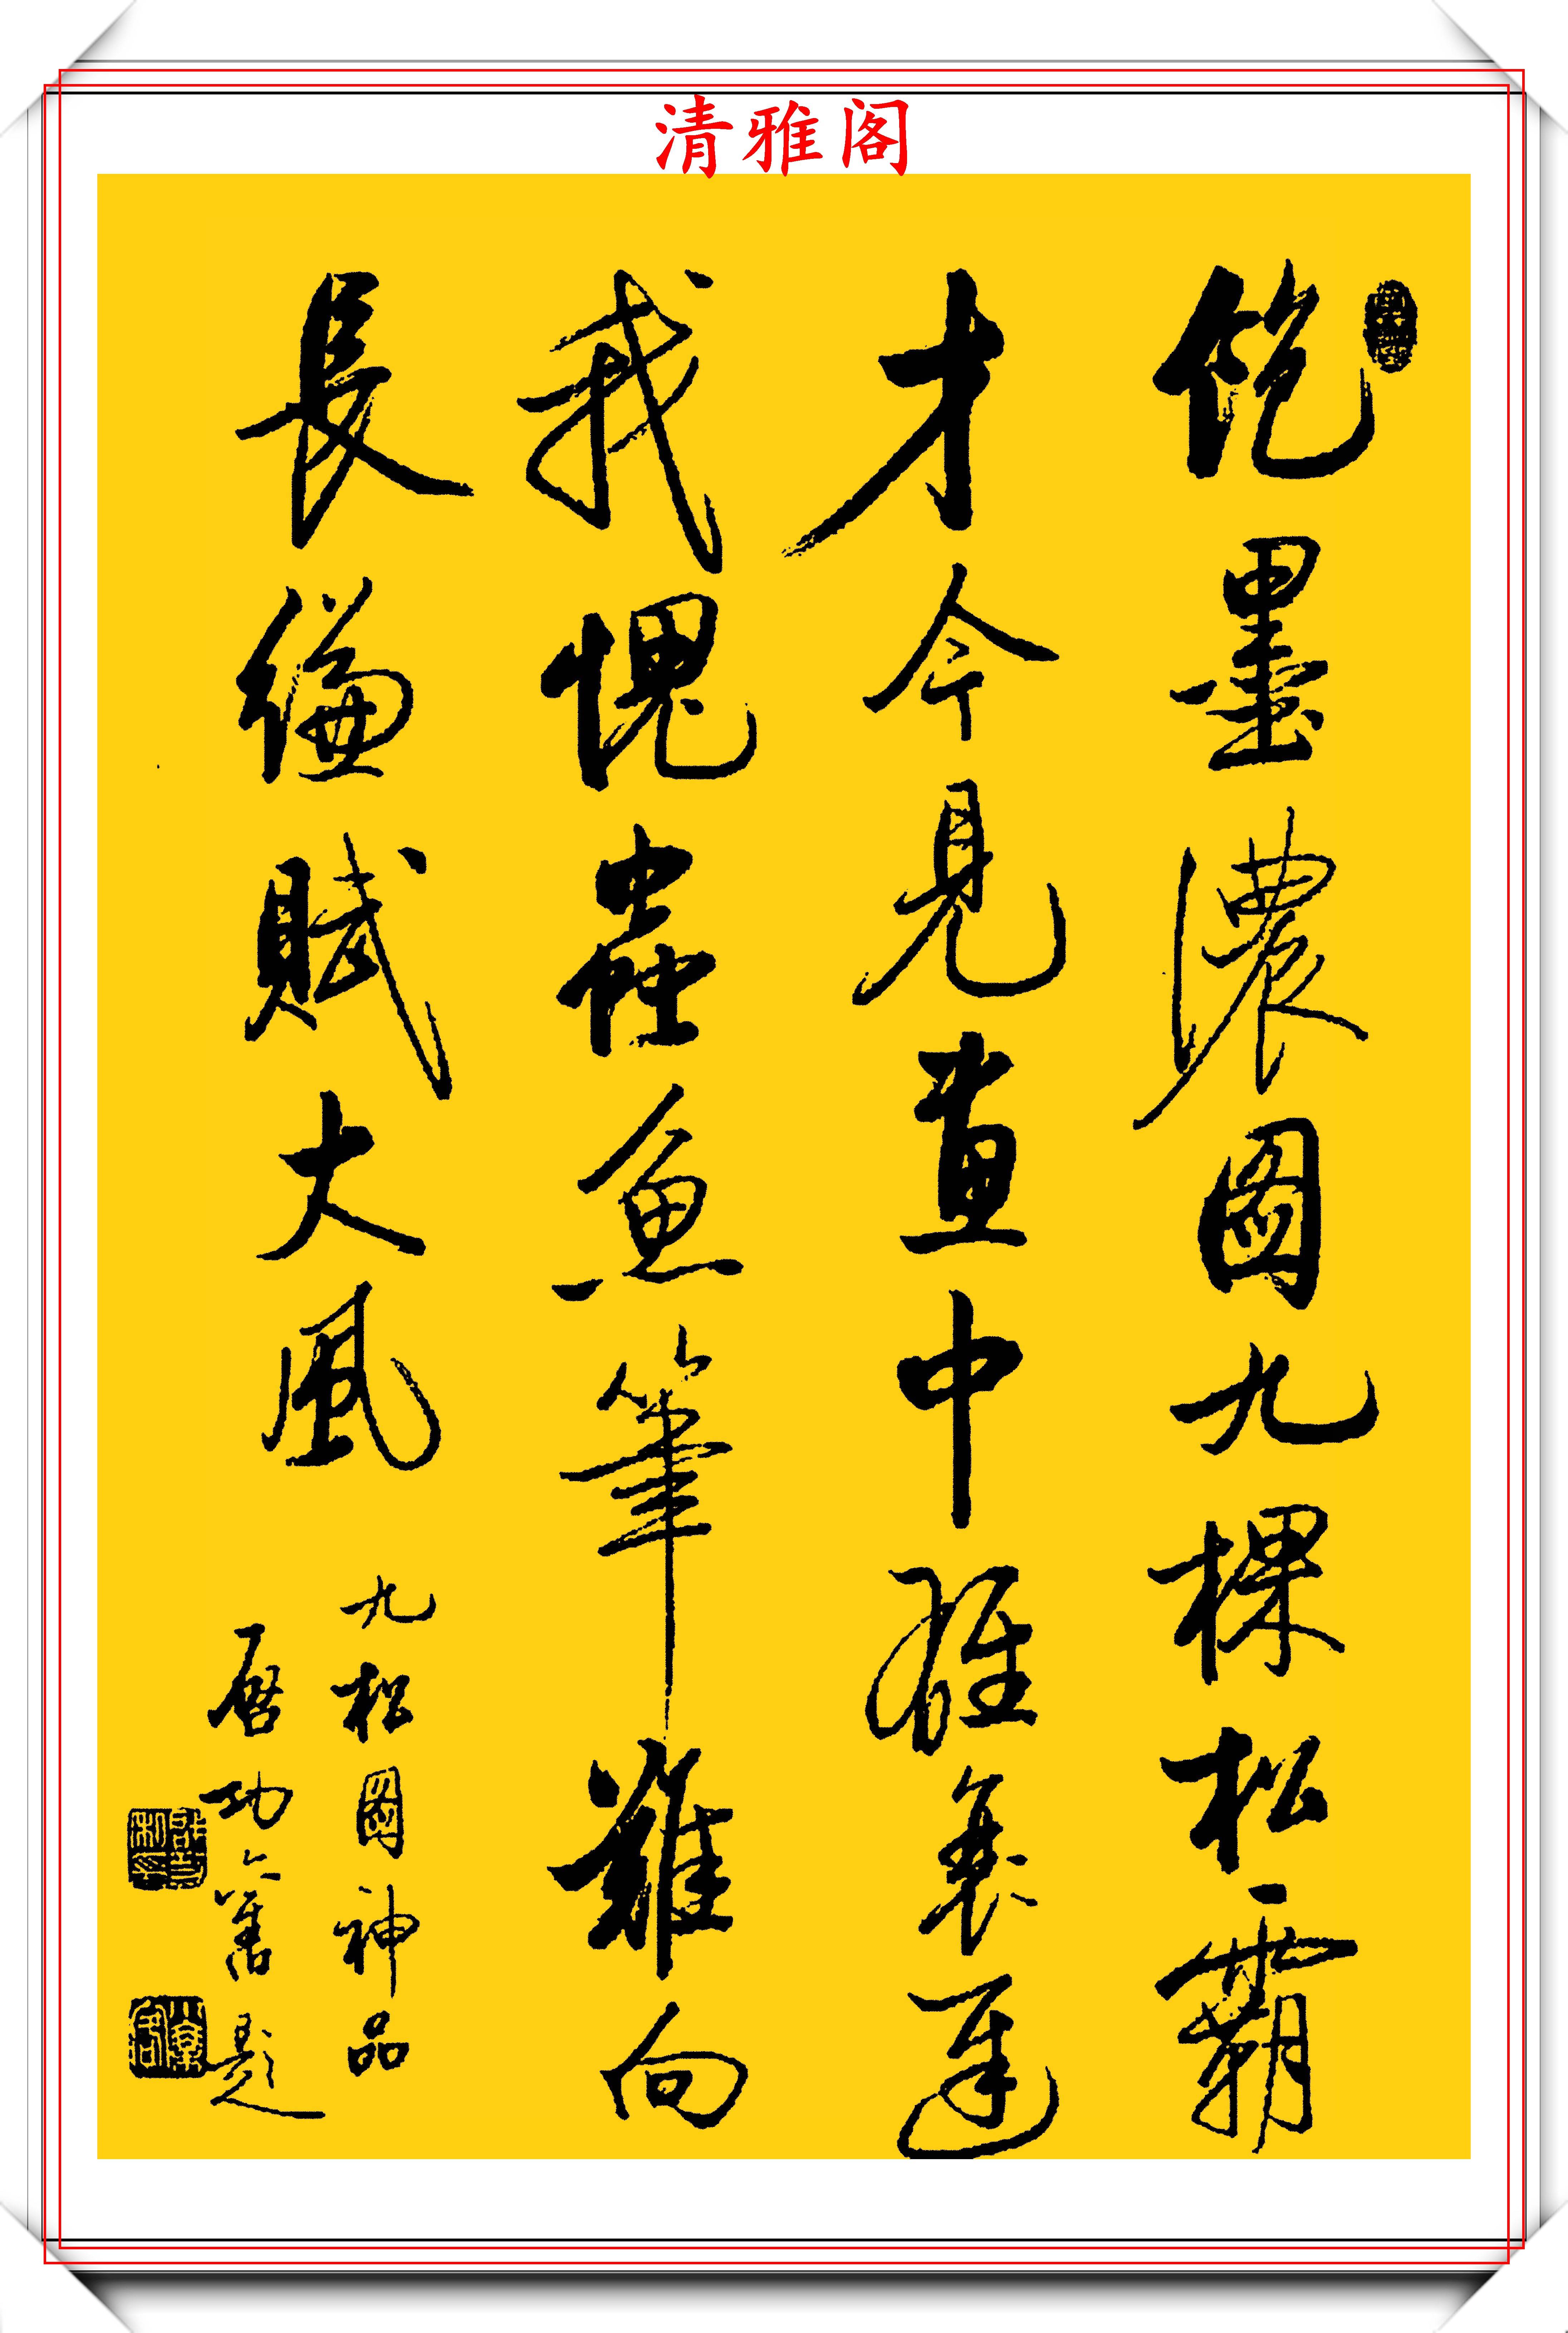 书者介绍:启功(1912726—2005630),中国书法家,书画鉴定家